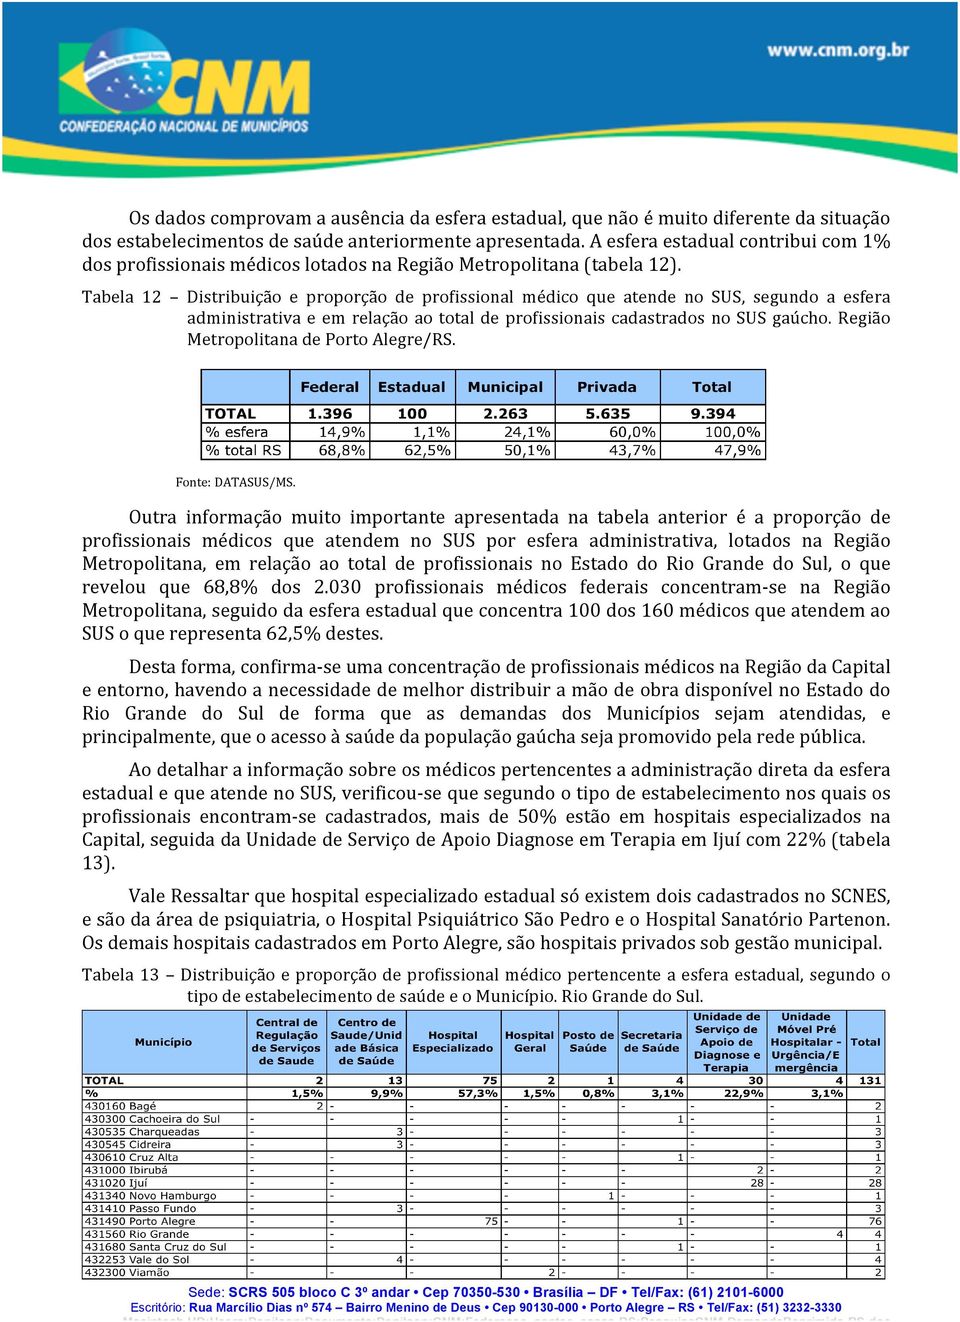 Tabela 12 Distribuição e proporção de profissional médico que atende no SUS, segundo a esfera administrativa e em relação ao total de profissionais cadastrados no SUS gaúcho.